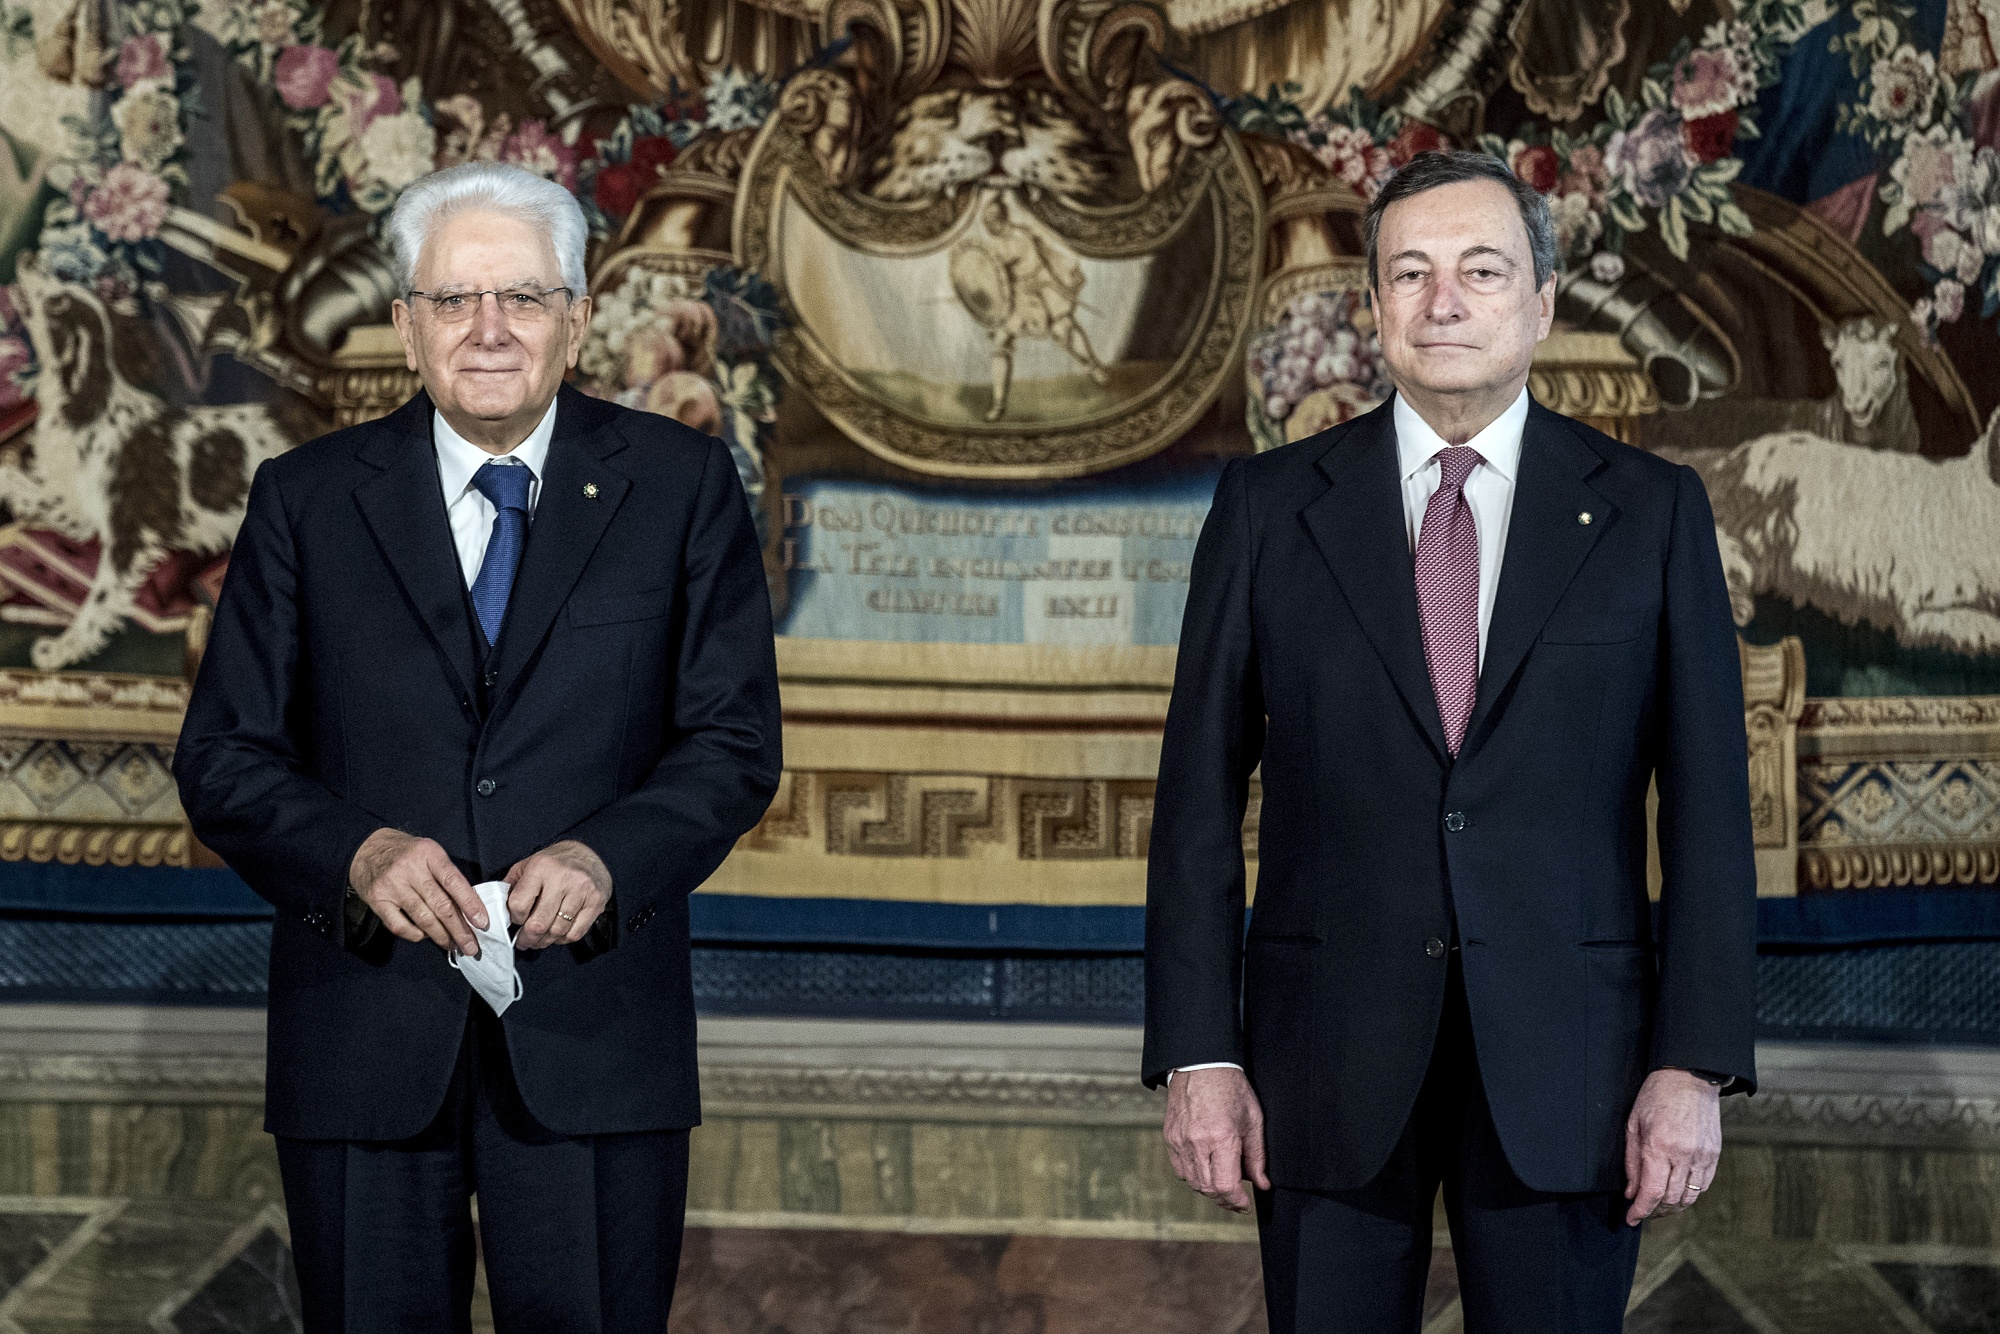 L’alleanza di Mario Draghi è a rischio a causa del piano pensionistico italiano del presidente Mattarella